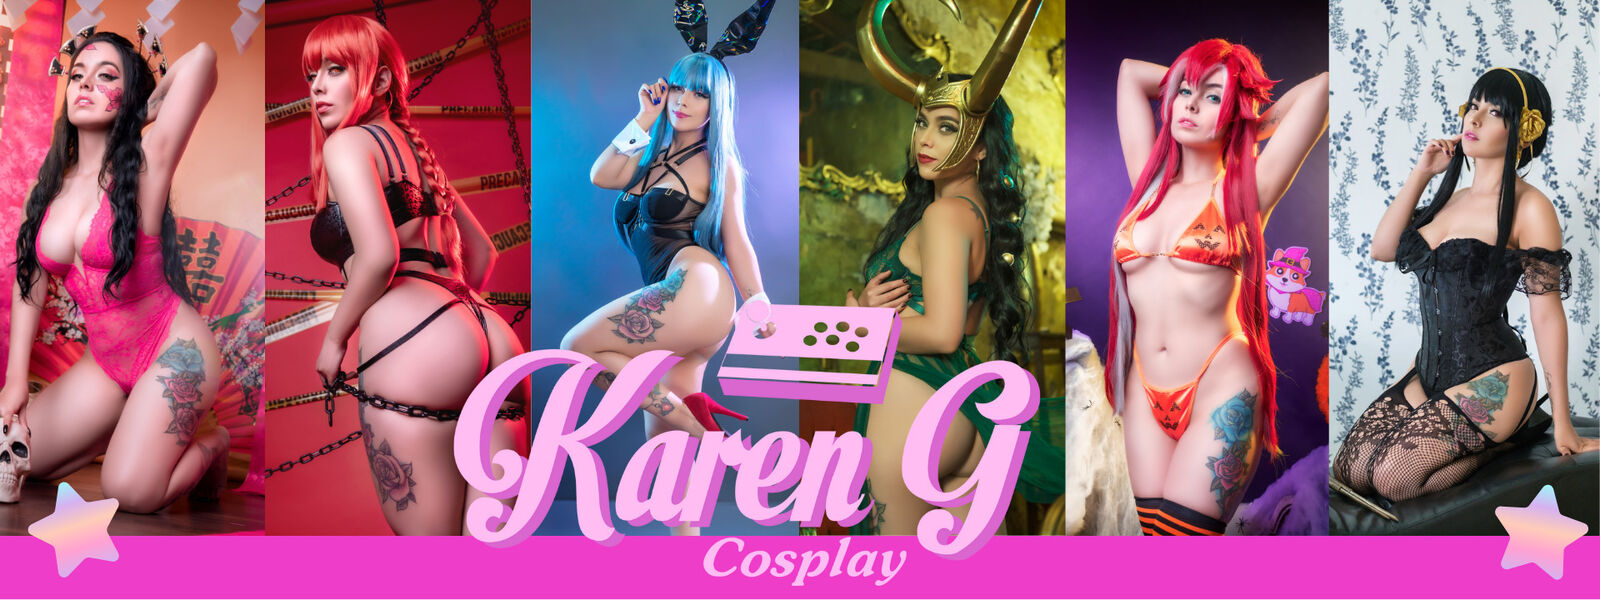 See Karen G profile